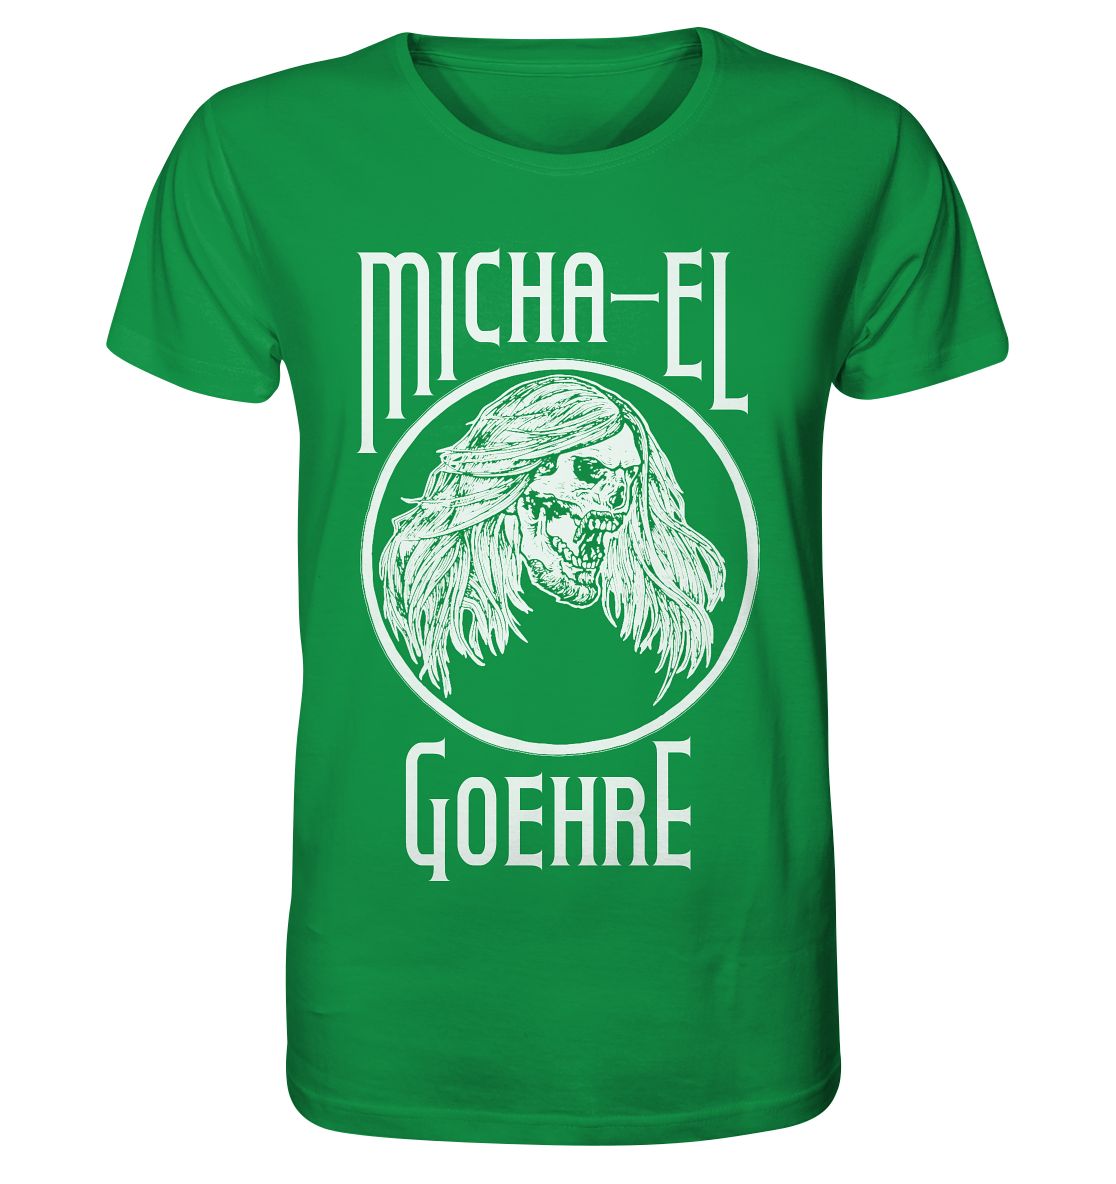 Ein Merchandise mit einem grünen Micha-El Goehre - offizielles Fan-Shirt - Bio-Shirt mit Artbookings/Shirtigo-Design.